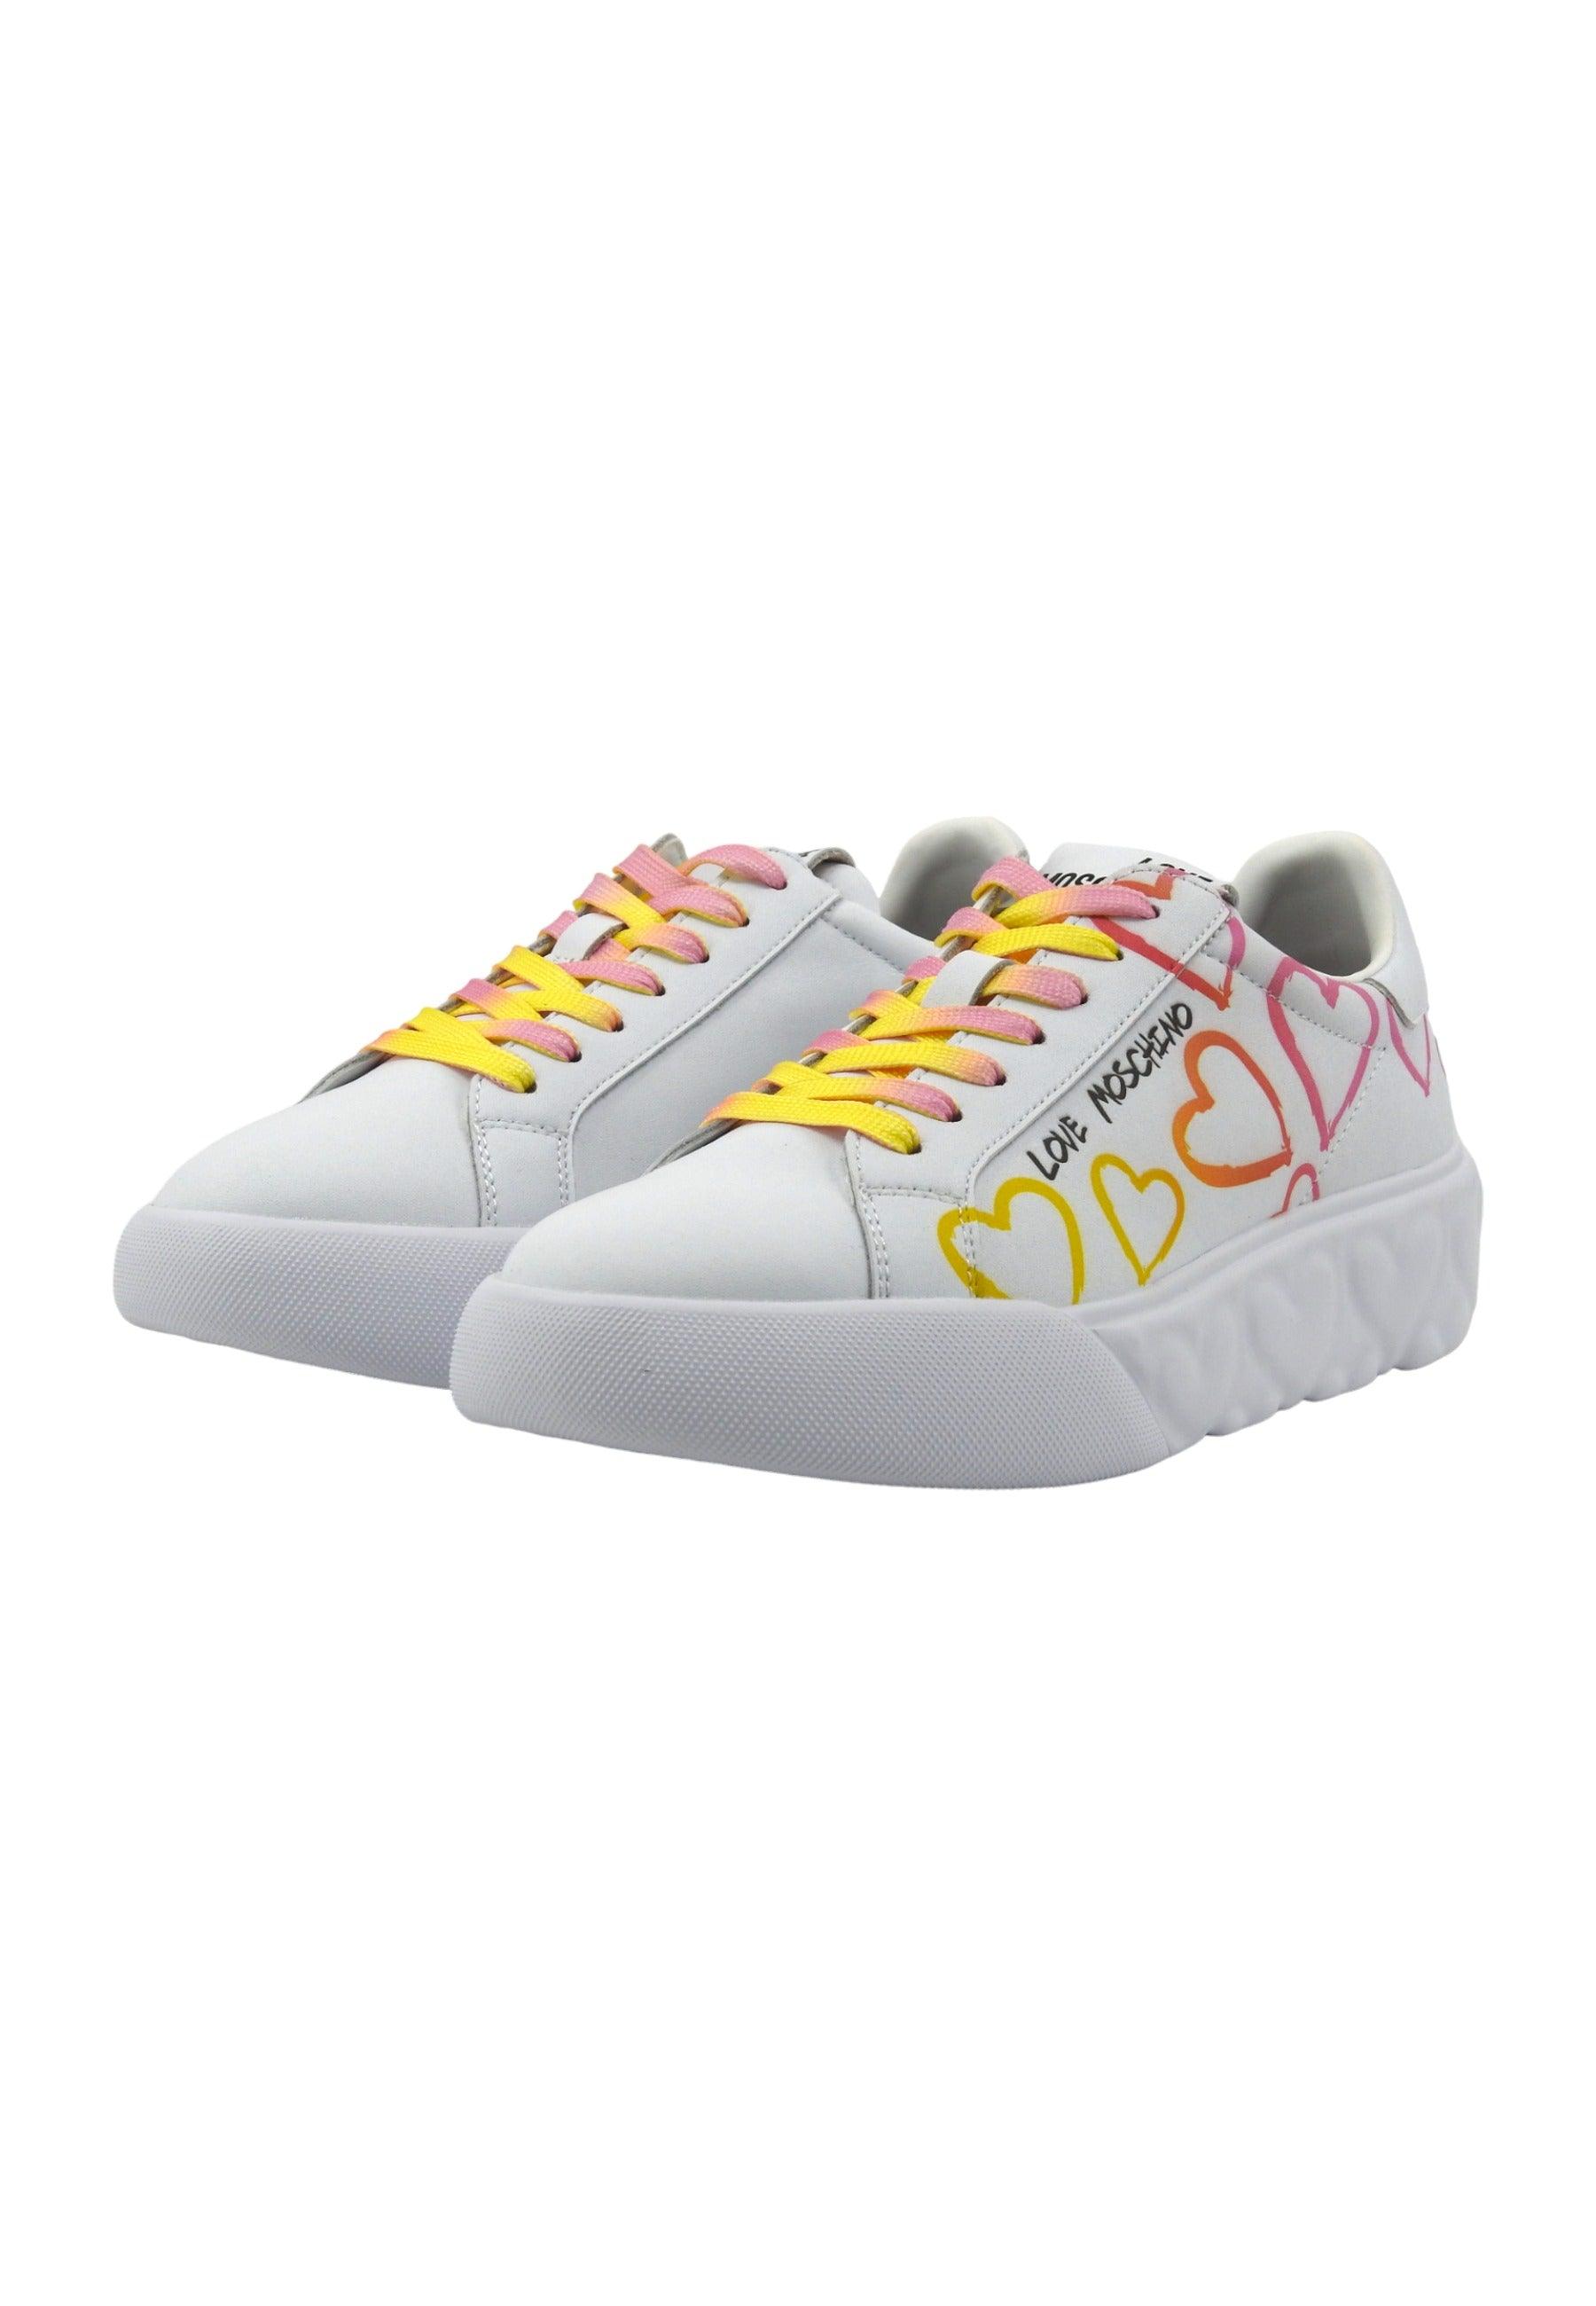 LOVE MOSCHINO Sneaker Donna Bianco Fuxia Multi JA15024G1IIDC10A - Sandrini Calzature e Abbigliamento